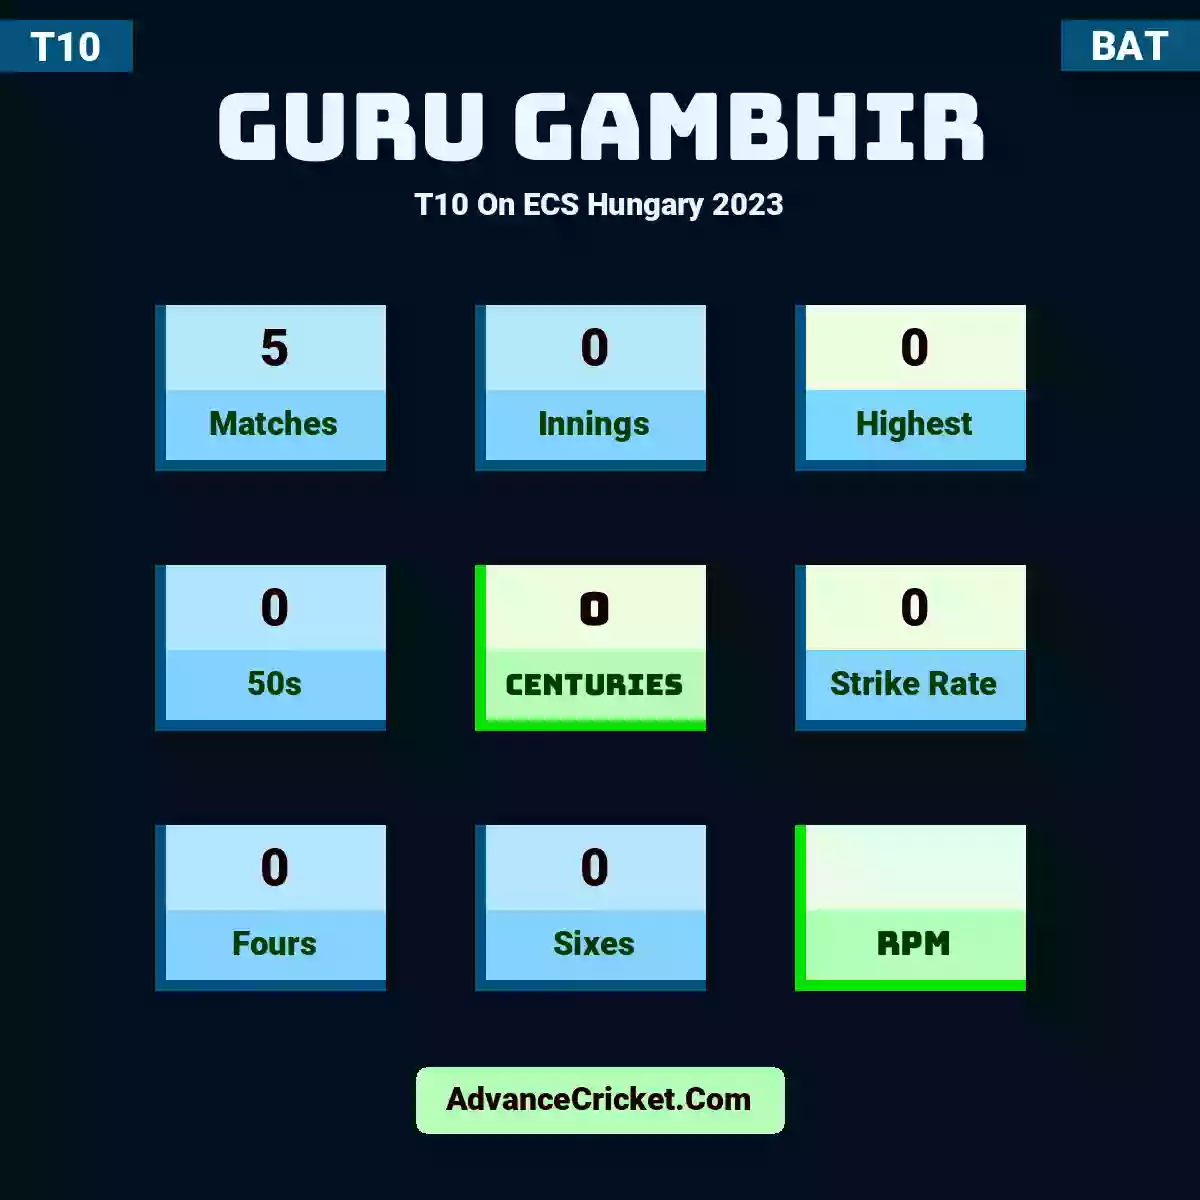 Guru Gambhir T10  On ECS Hungary 2023, Guru Gambhir played 5 matches, scored 0 runs as highest, 0 half-centuries, and 0 centuries, with a strike rate of 0. Guru.Gambhir hit 0 fours and 0 sixes.